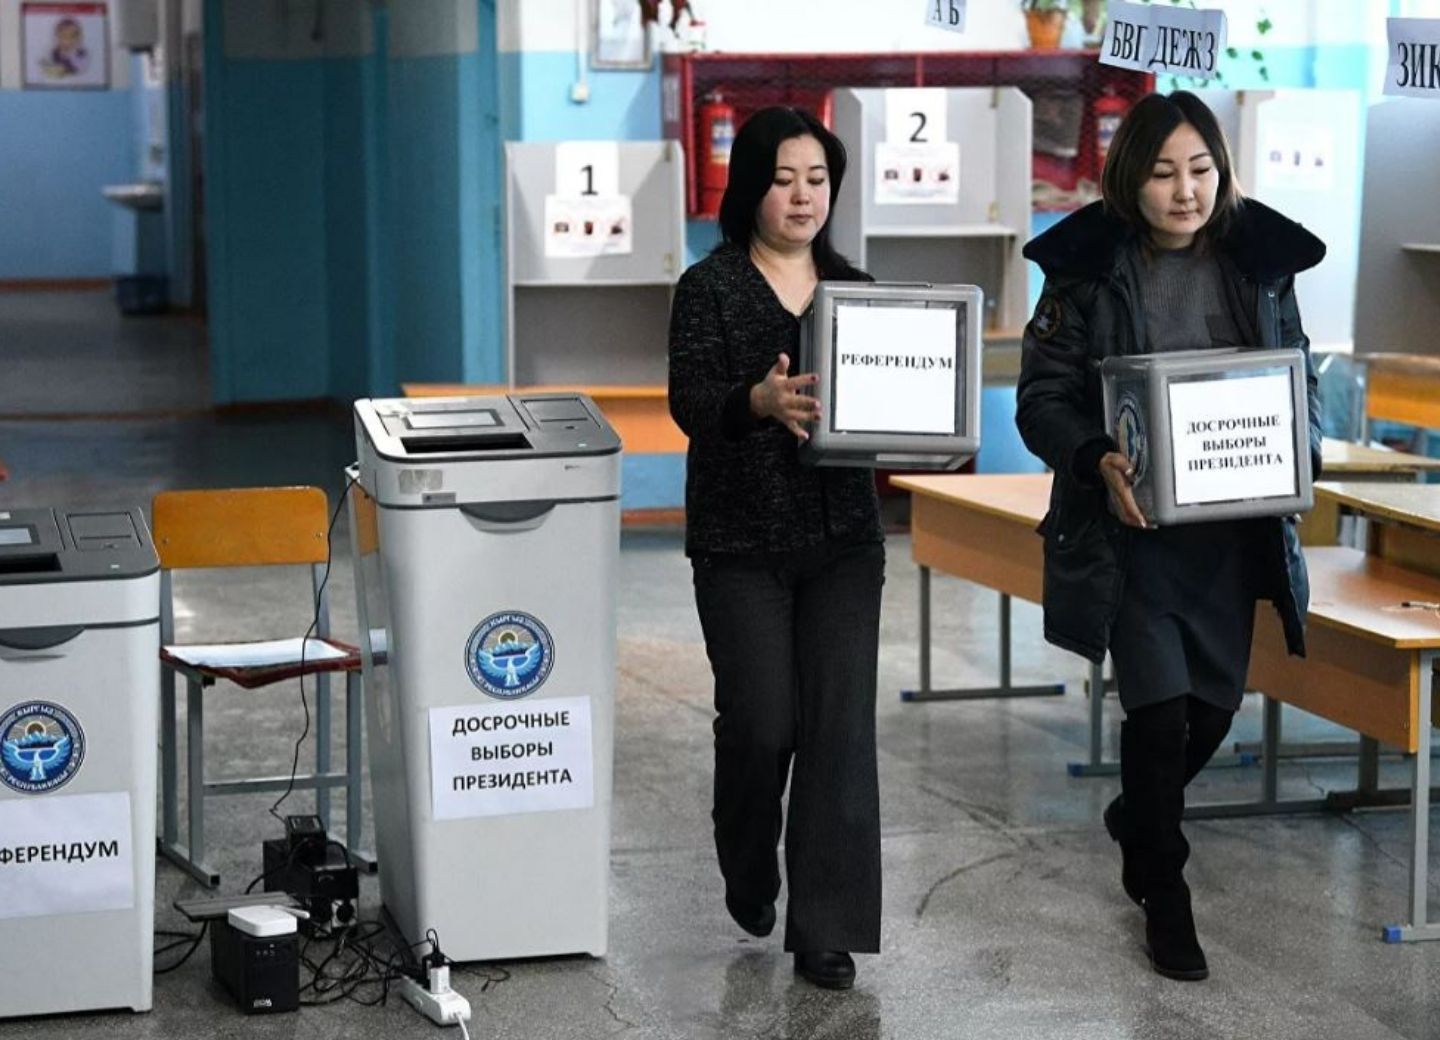 Глава ЦИК Кыргызстана назвал итоги выборов президента полностью достоверными - ОБНОВЛЕНО